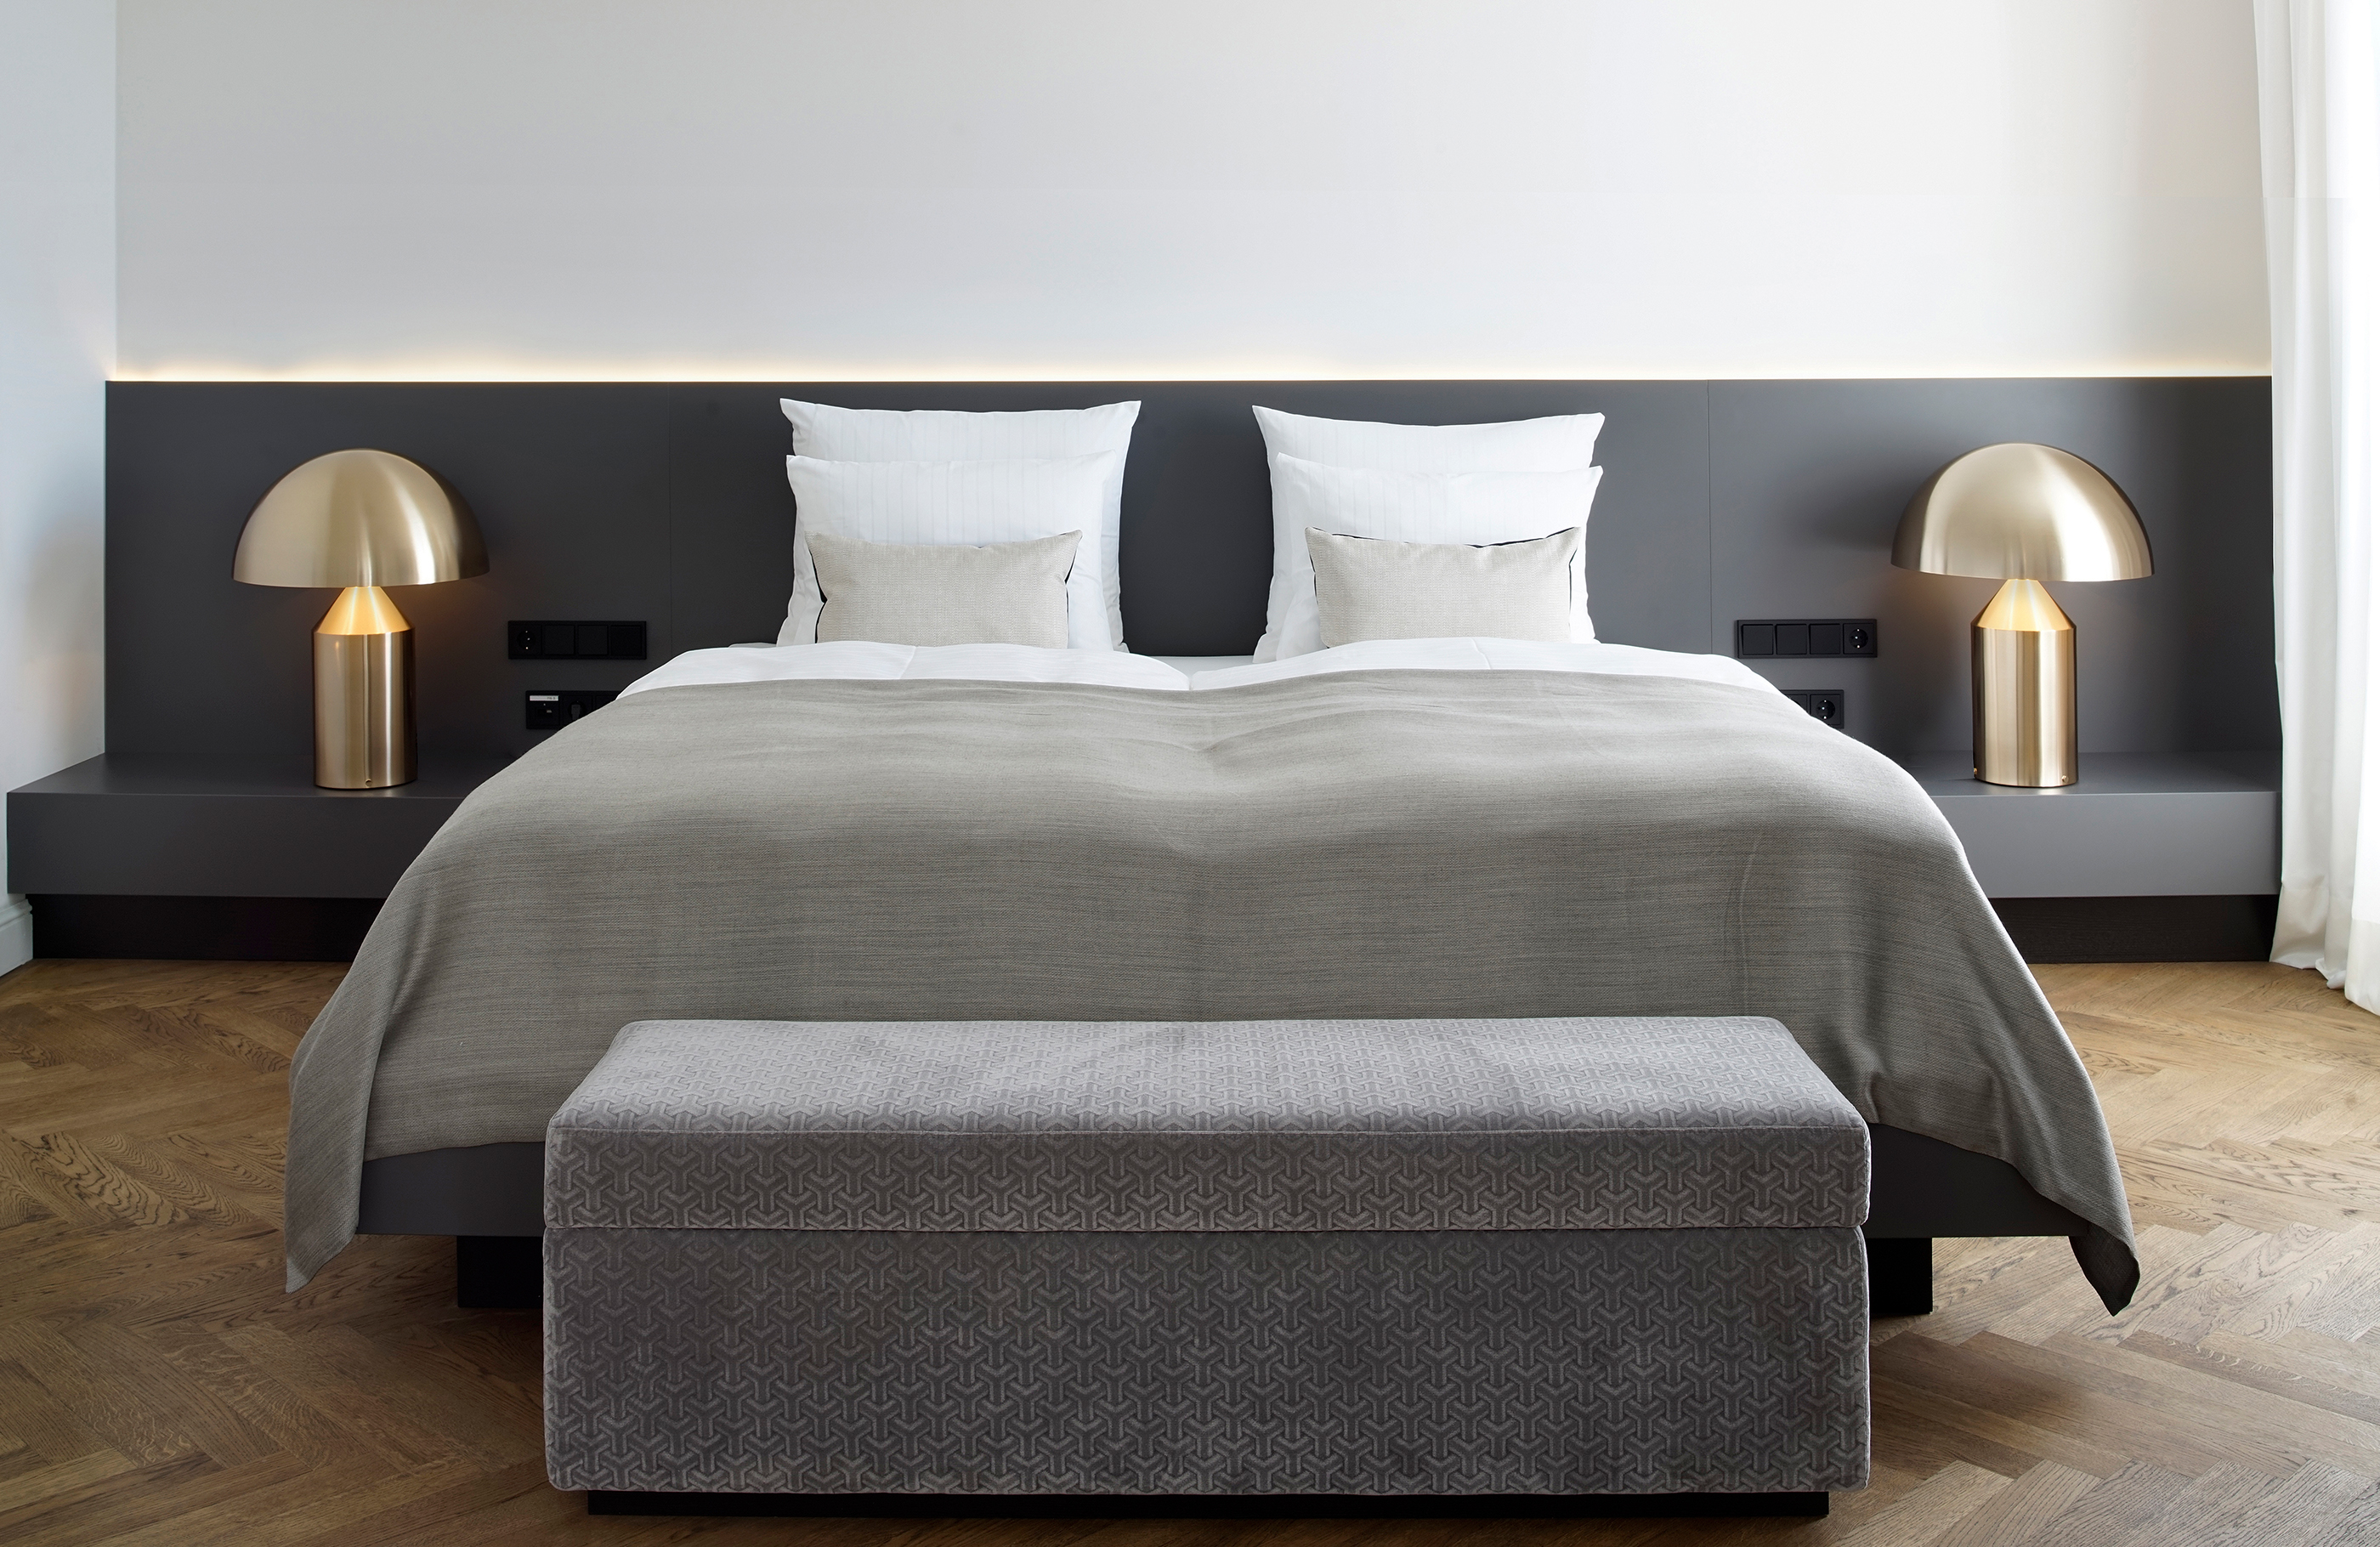 Blick in ein Doppelzimmer im Hotel Das Tegernsee mit einem großen, in weiß-grauen Farben bezogenem Bett, vor dem eine graue Truhensitzbank steht.